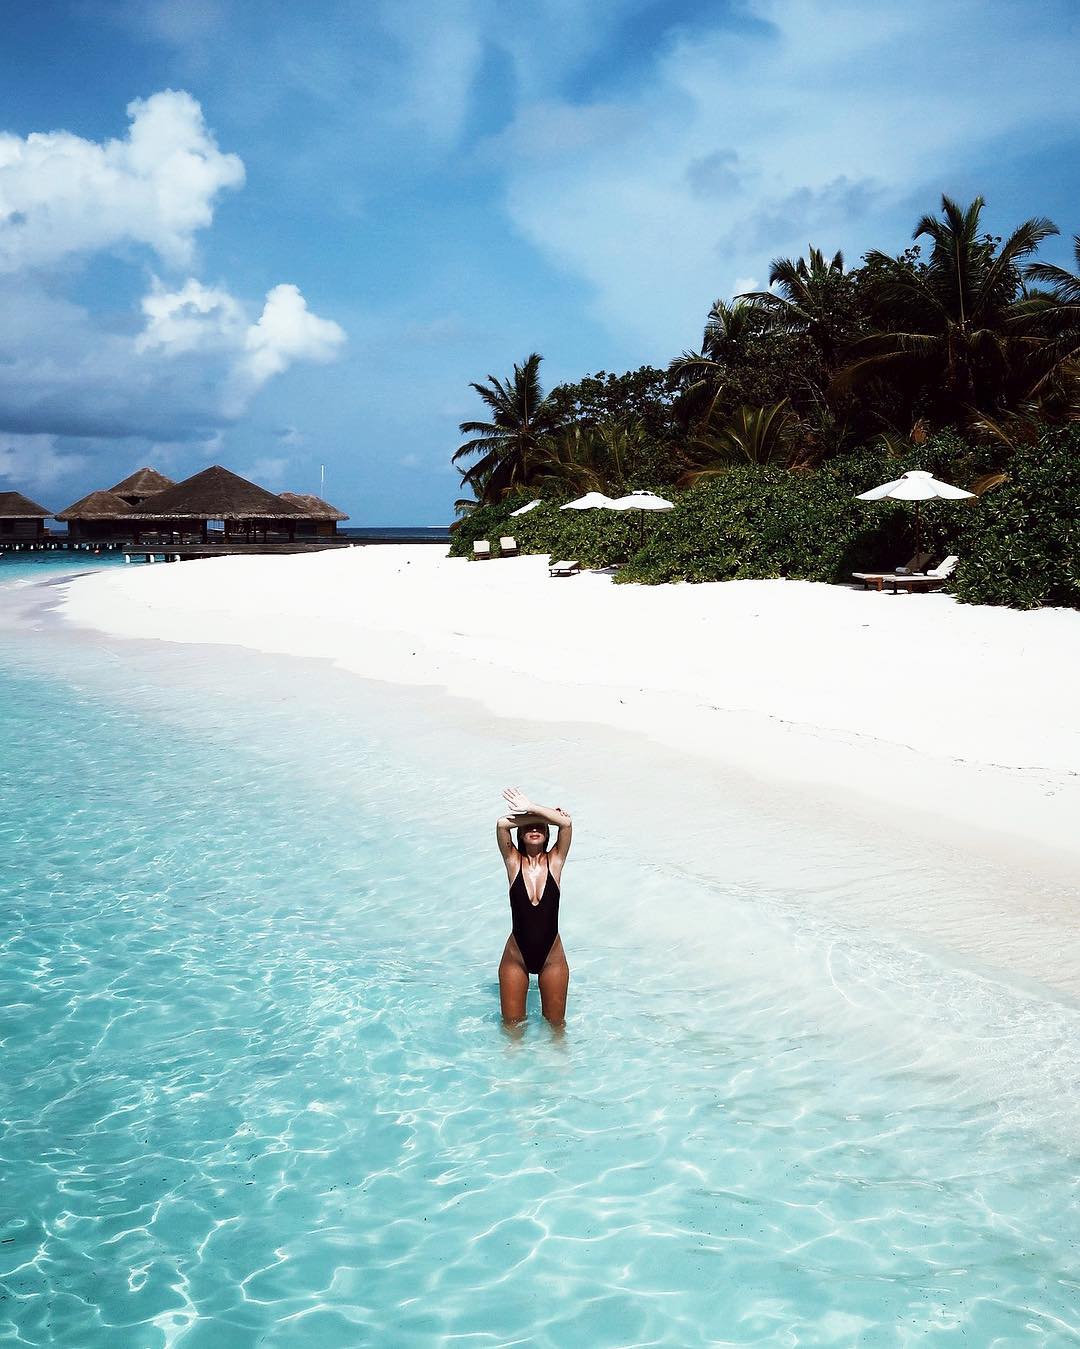 Huvafen Fushi, Maldives, credits to @victoriatornegren on Instagram